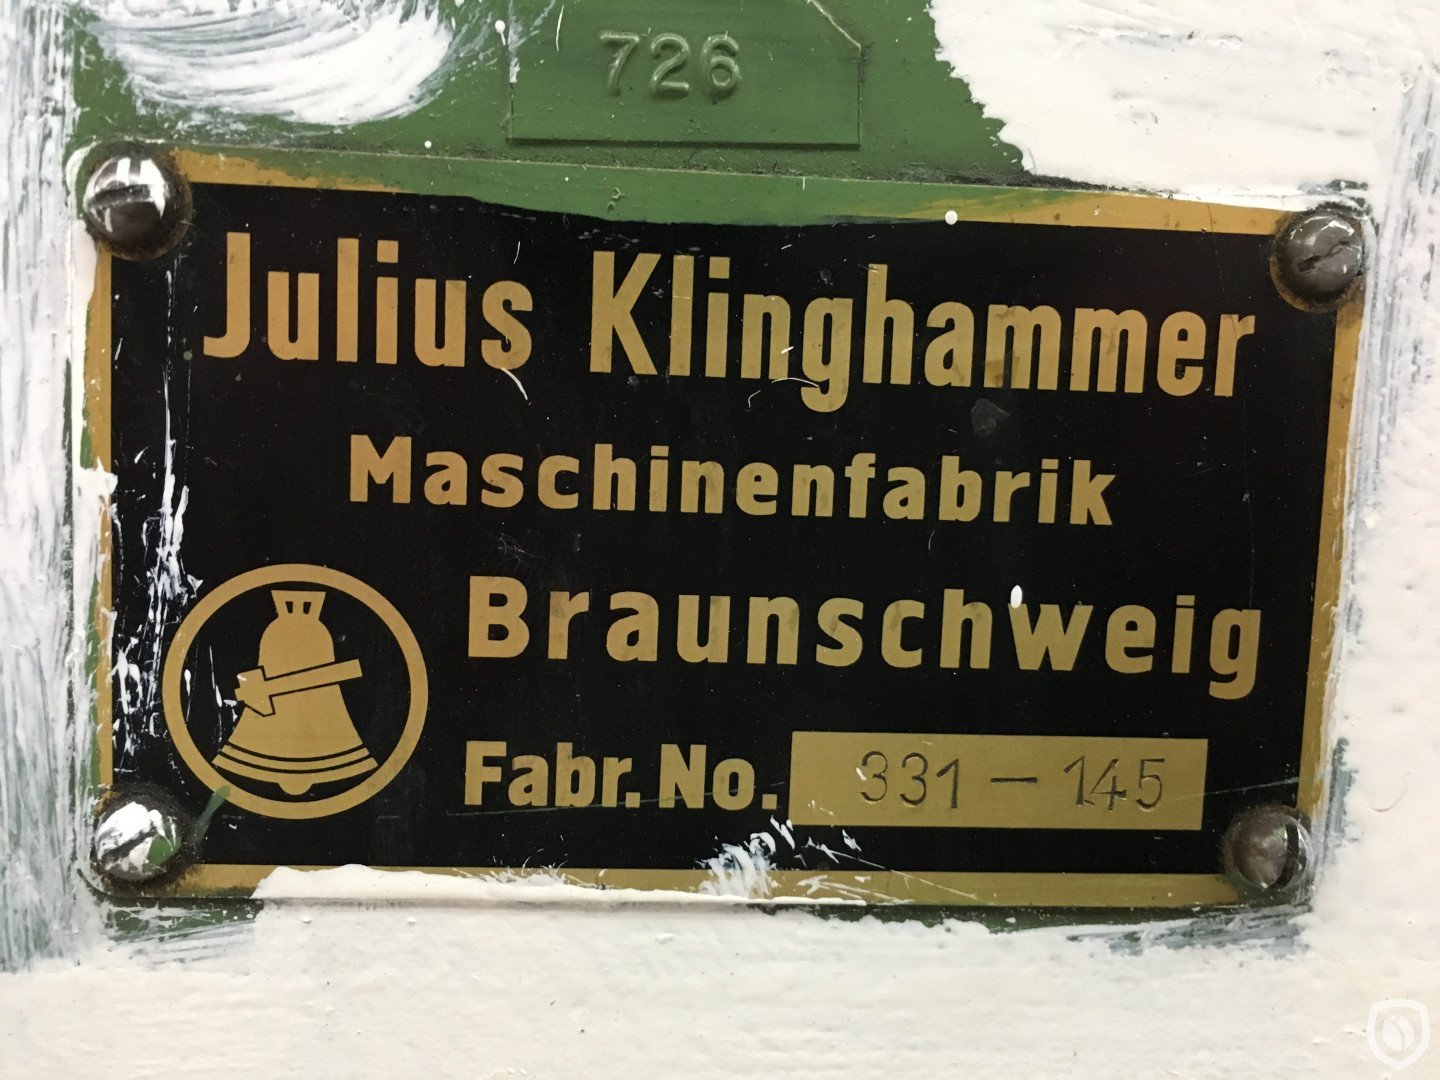 Klinghammer identification plate